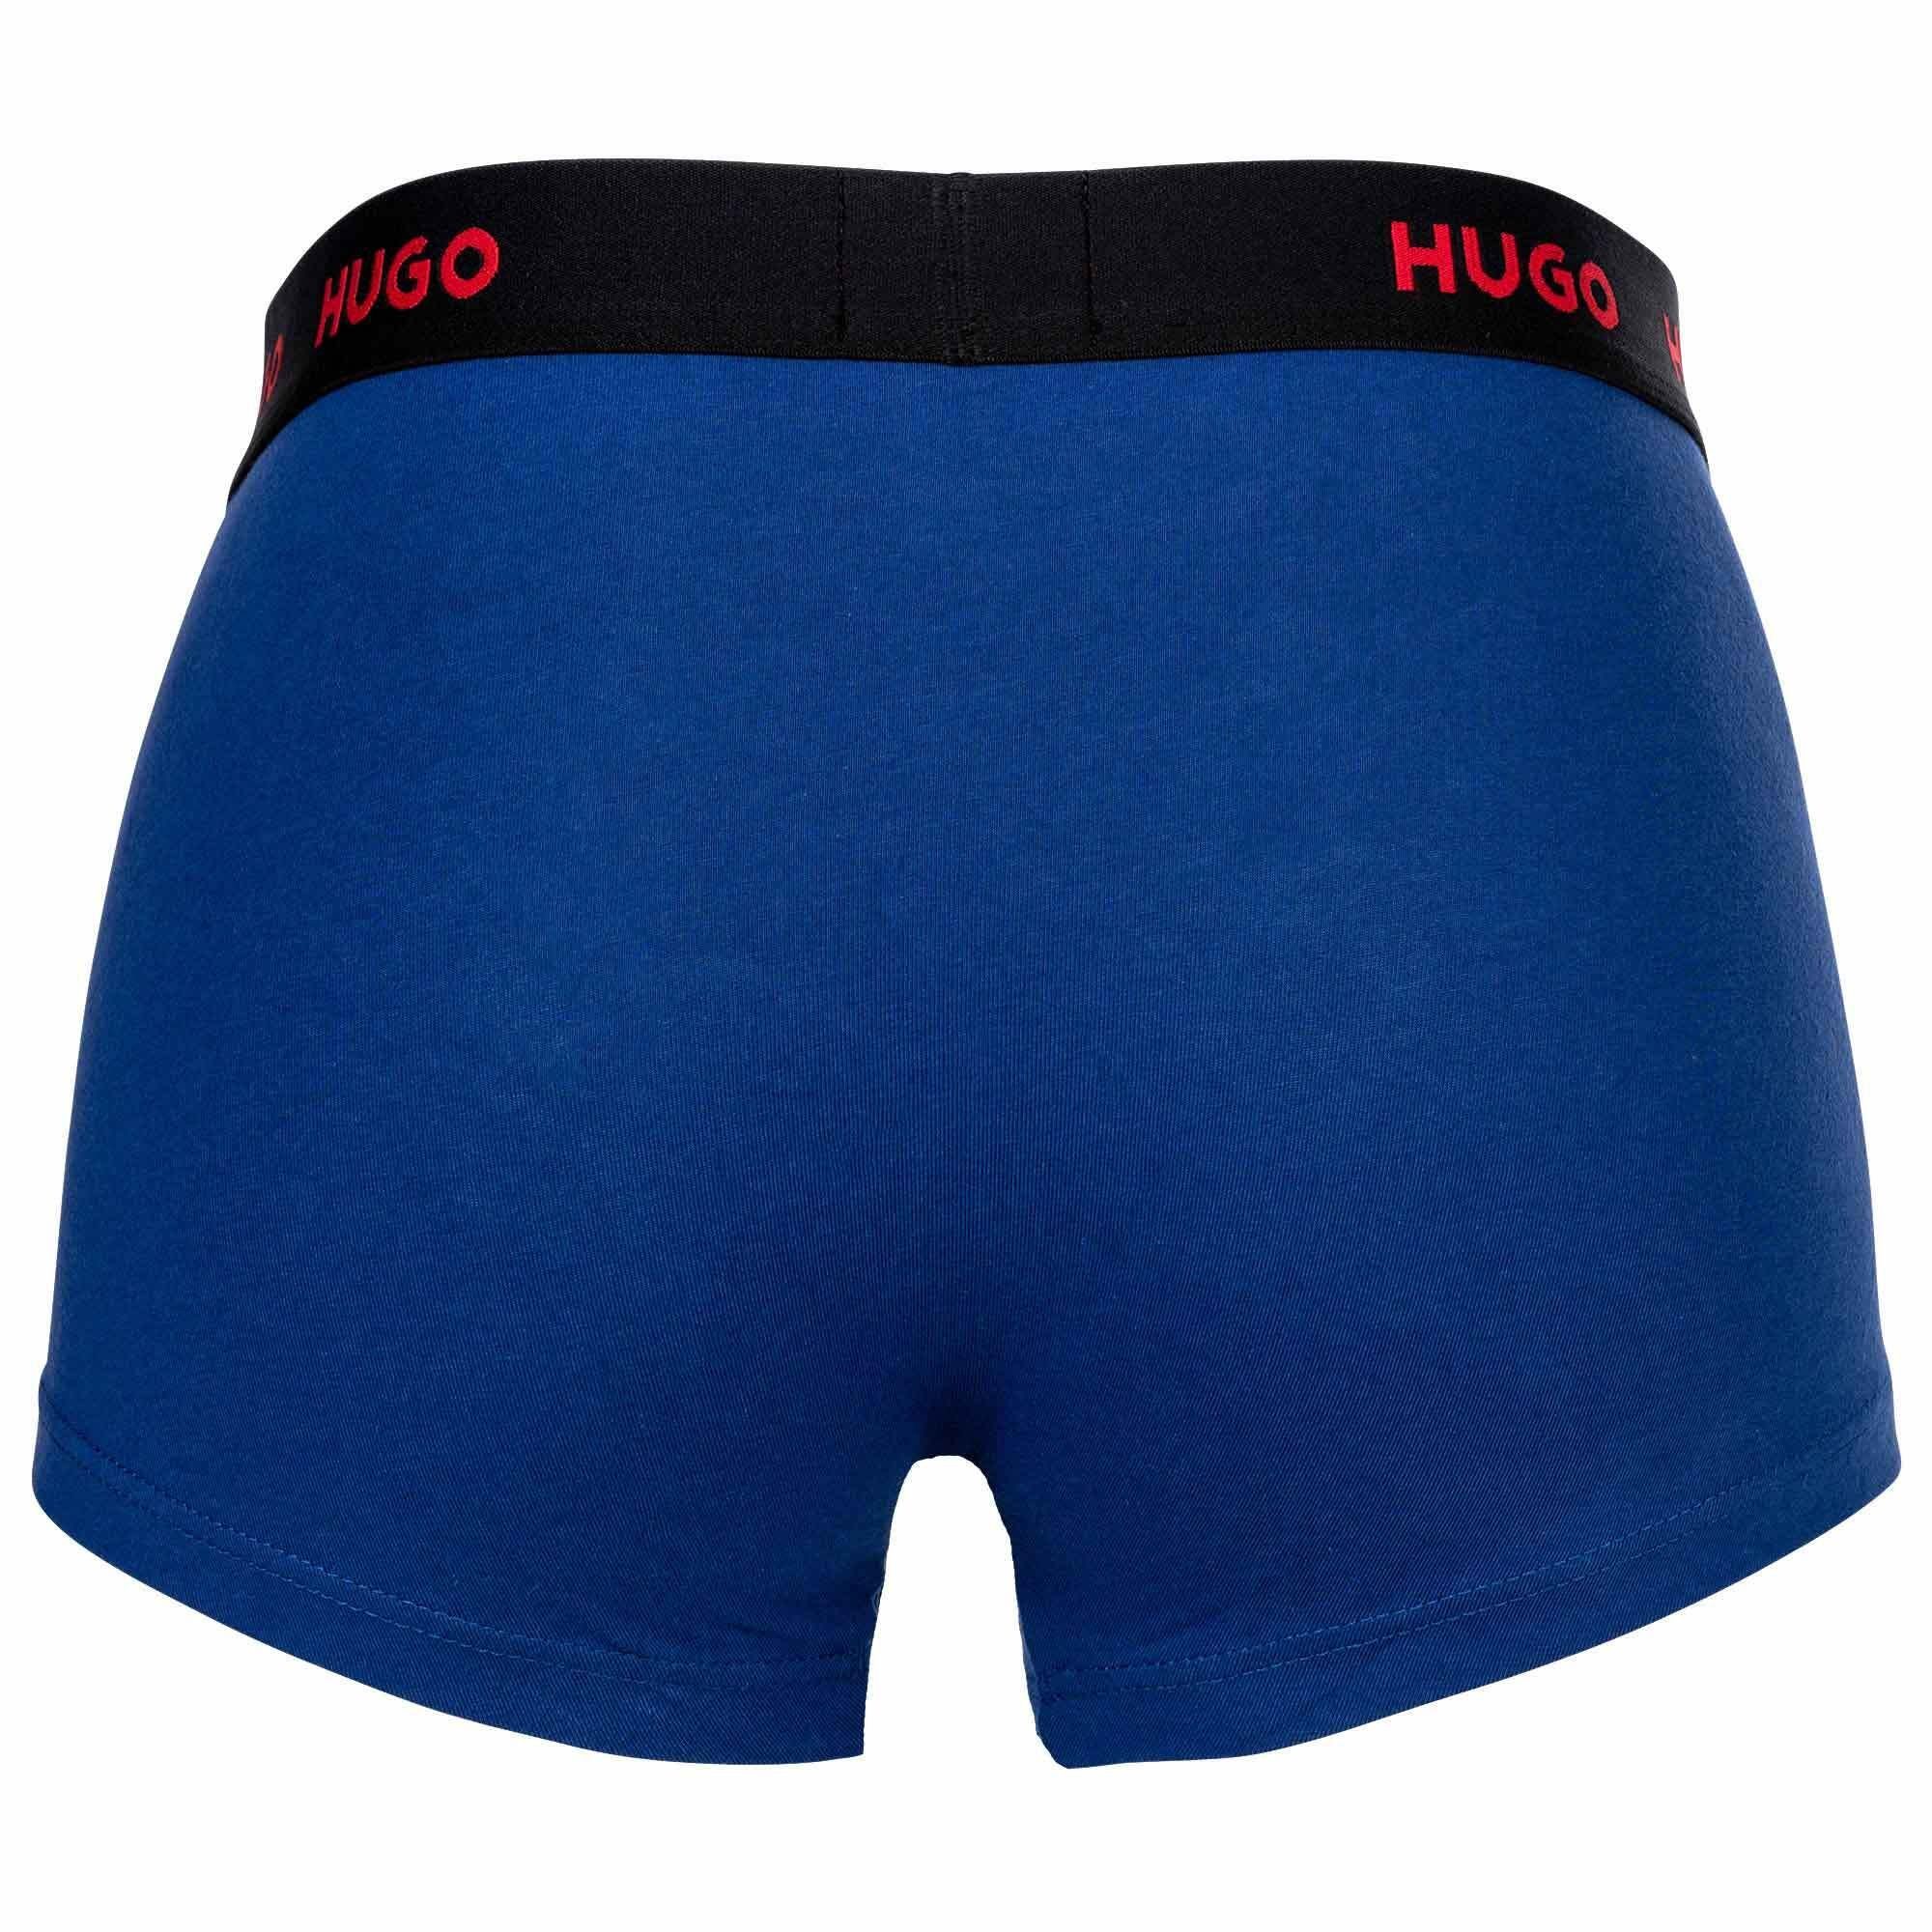 Boxer Shorts, 3er Pack Triplet Herren Trunks - HUGO Boxer Blau/Weiß